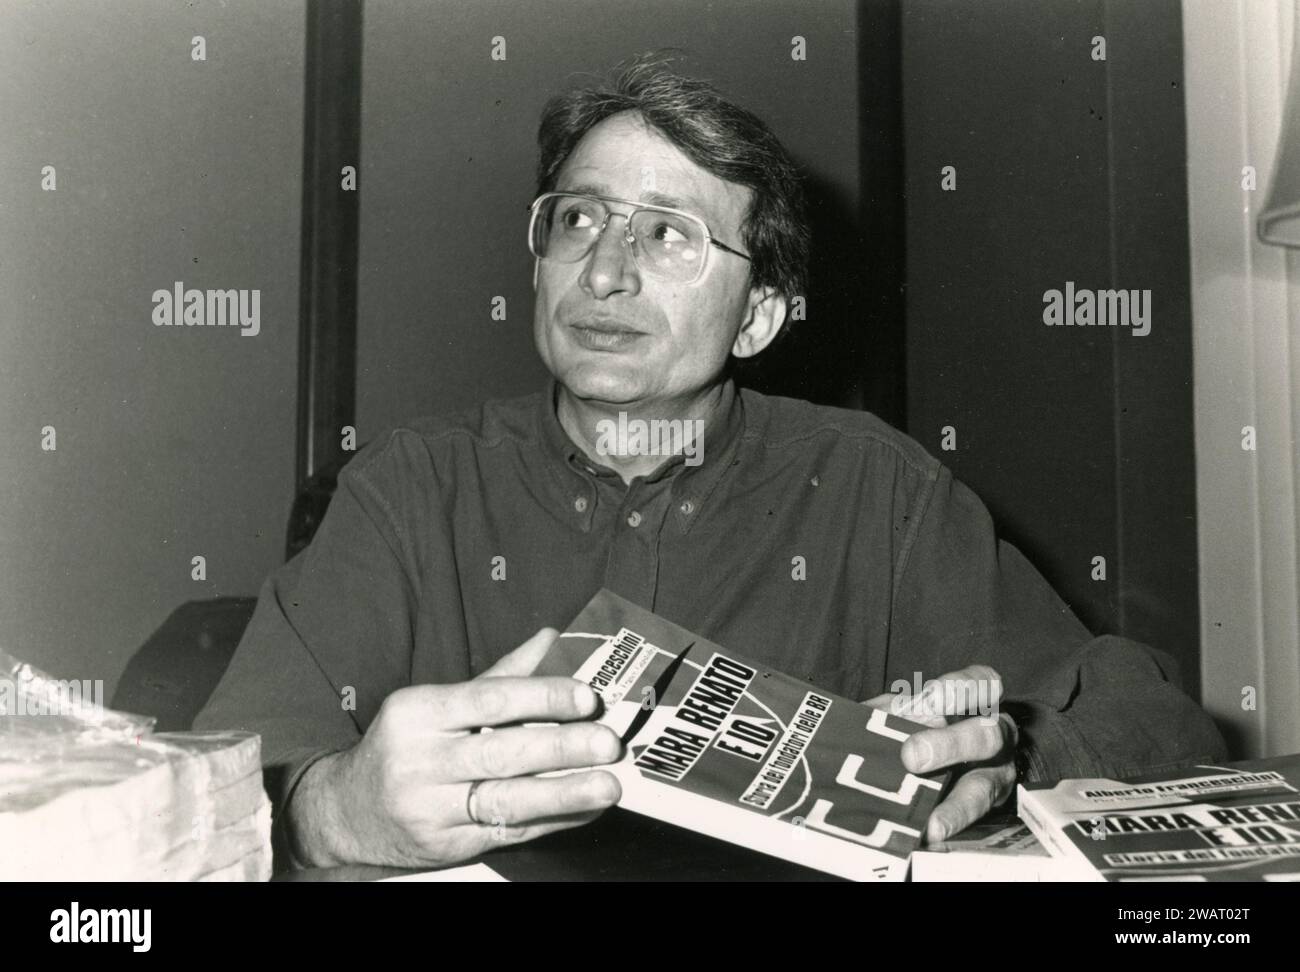 Alberto Franceschini, fondateur et terroriste des Brigades rouges italiennes, Italie des années 1990 Banque D'Images